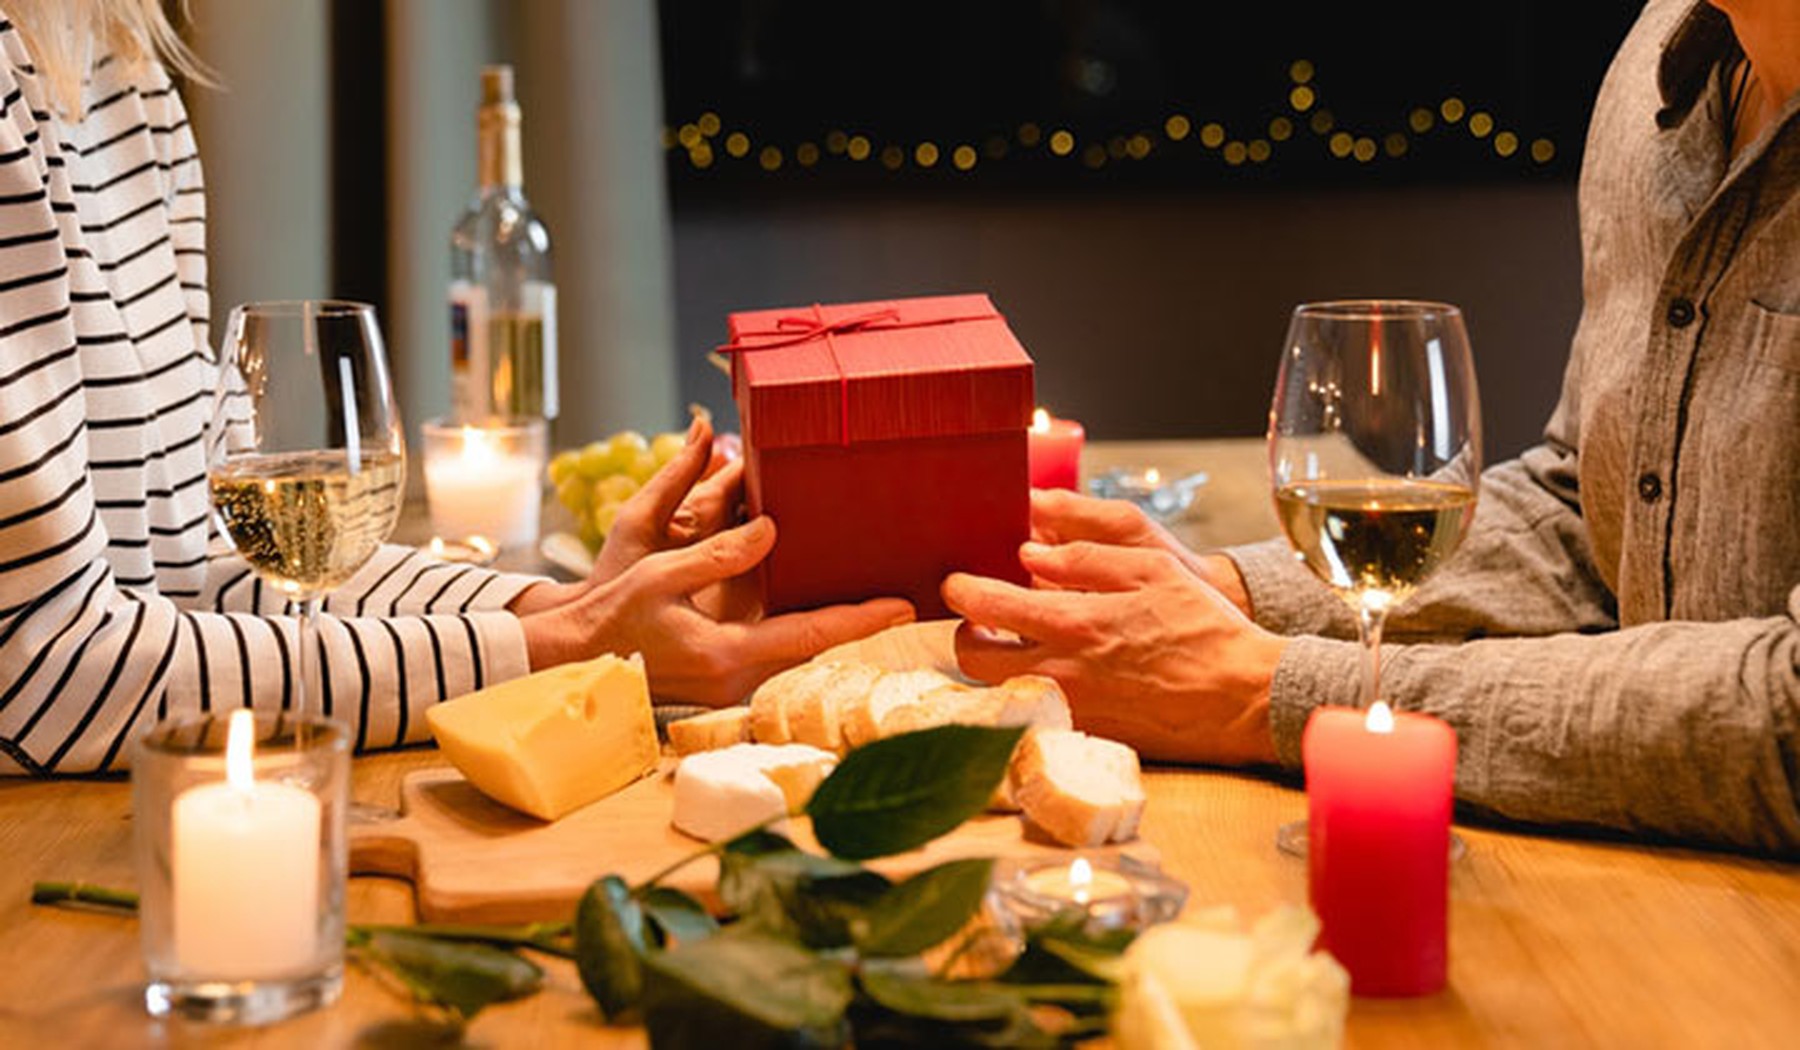 Foto de las manos de una pareja dándose regalos por su aniversario mientras disfrutan de una cena romántica con quesos y vino.